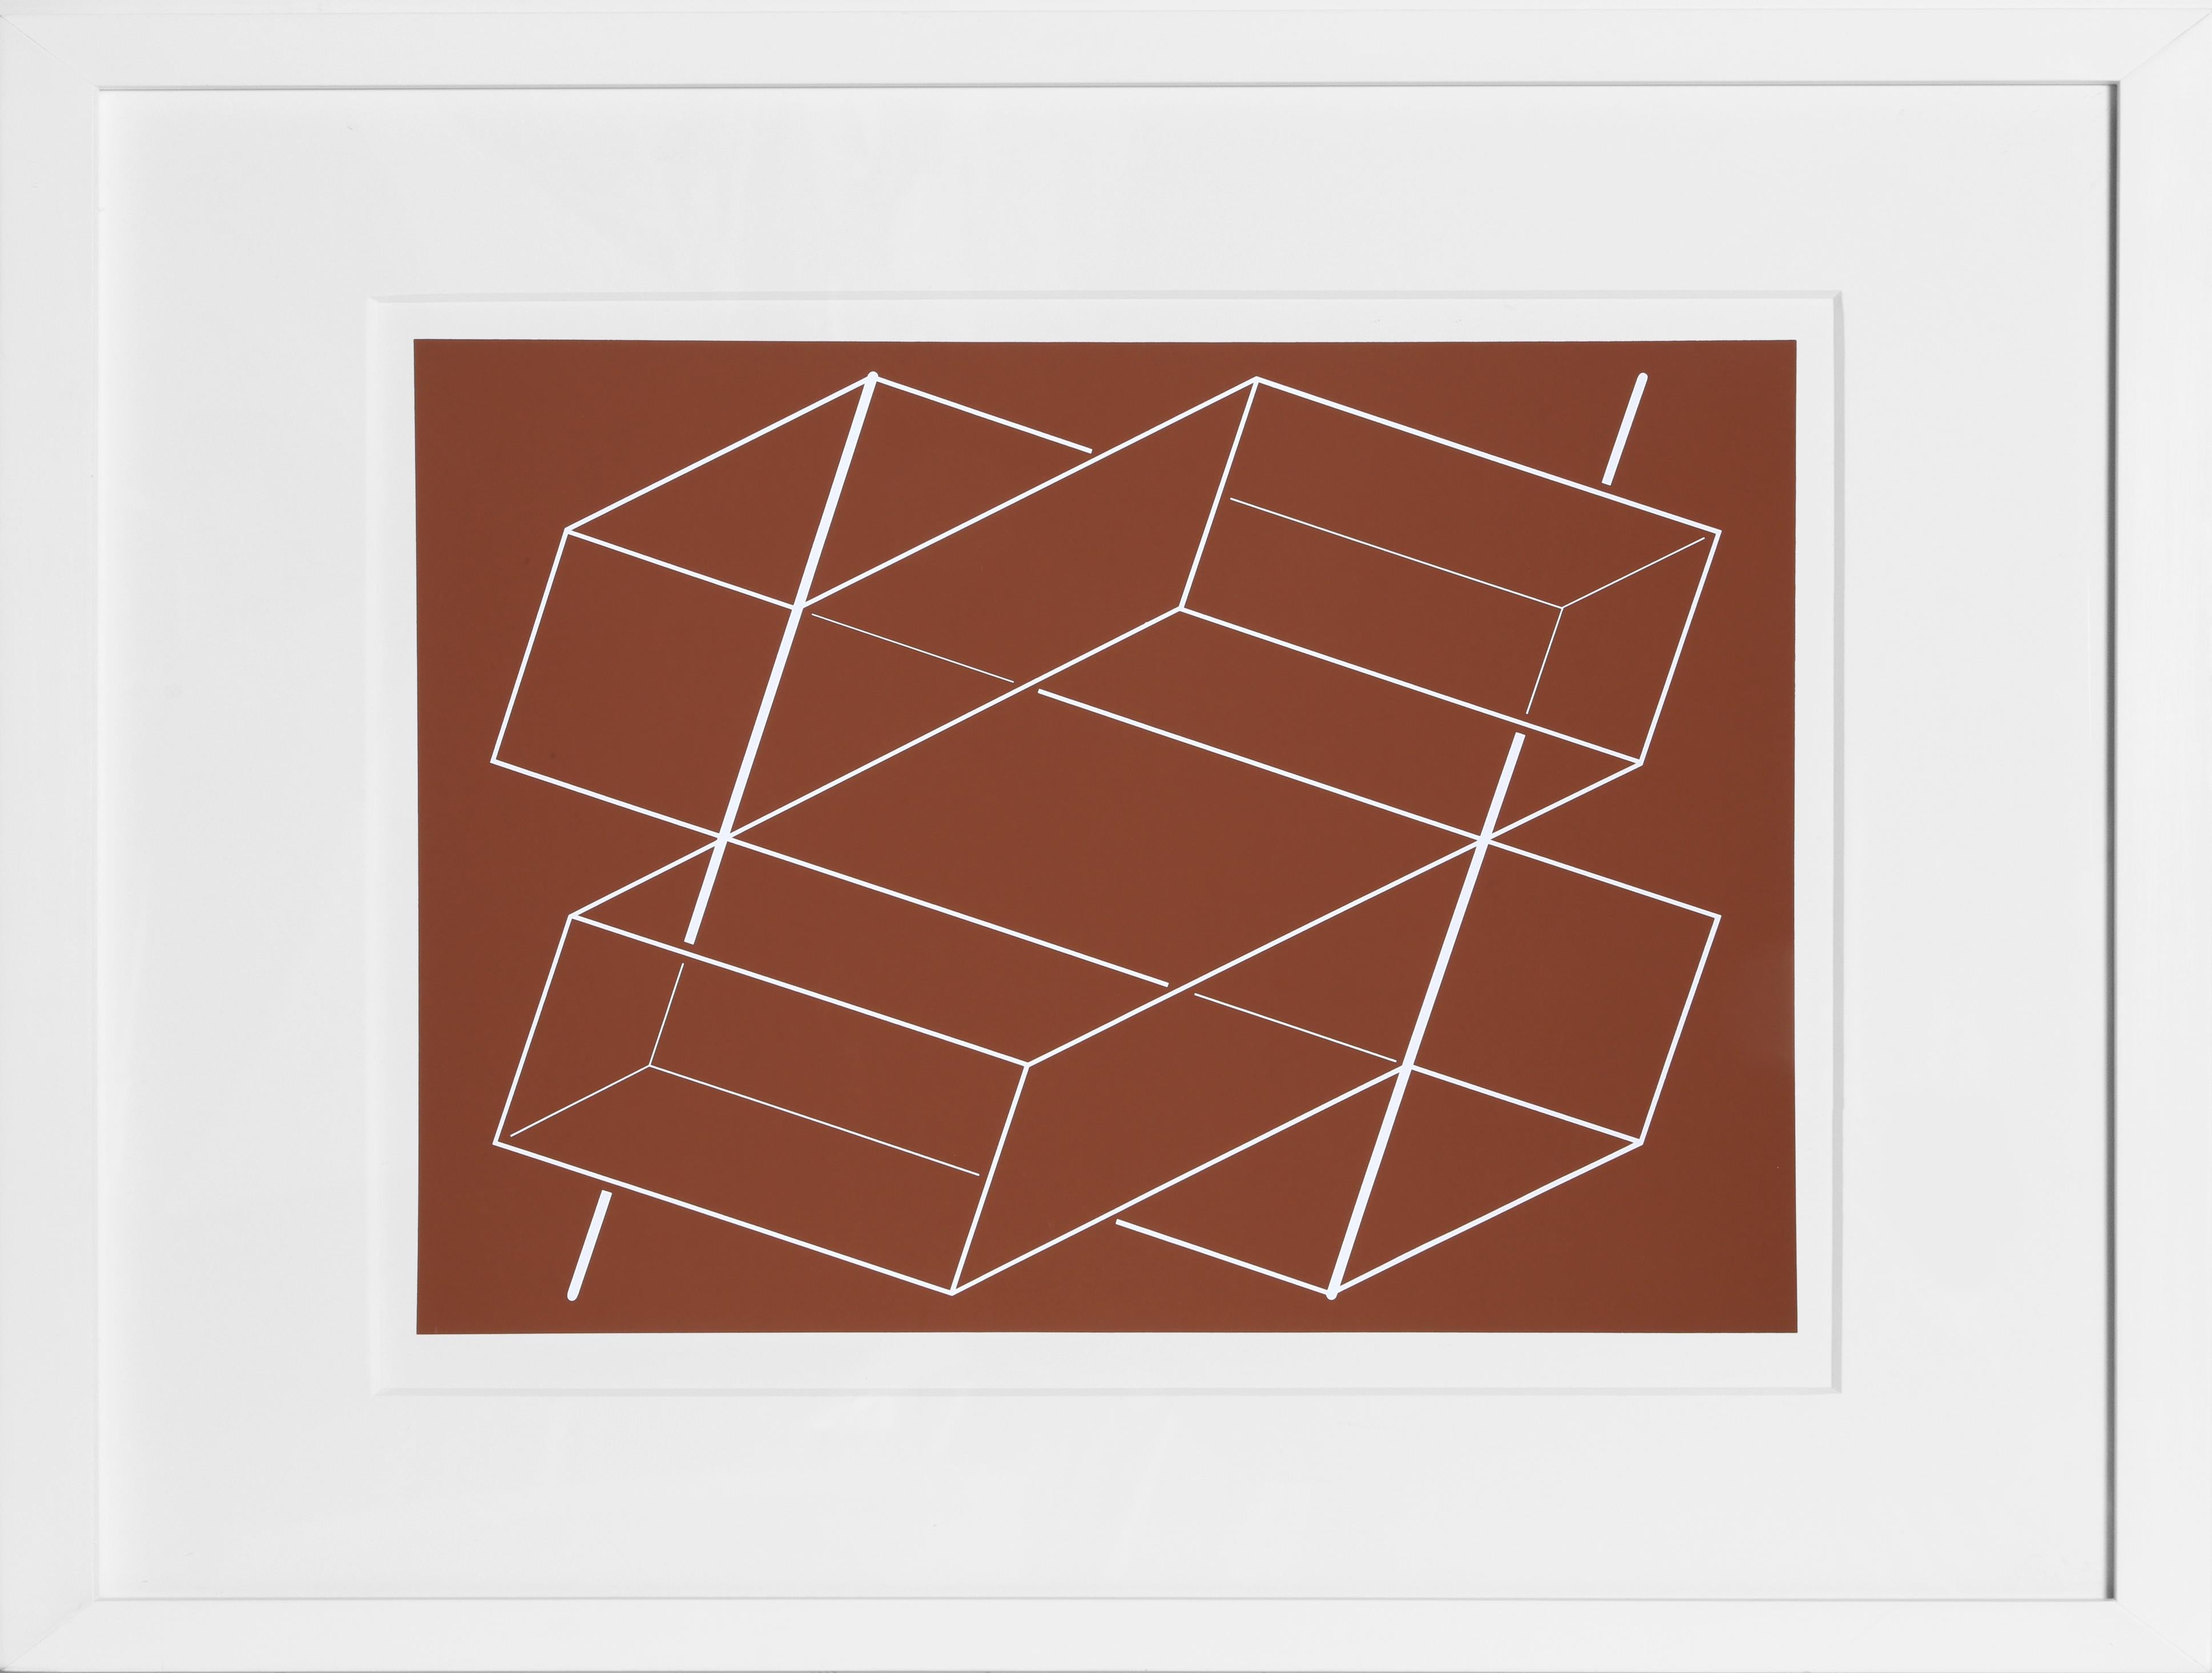 Bands/Pfosten - P1, F3, I2, Geometrischer abstrakter Raumteiler von Josef Albers